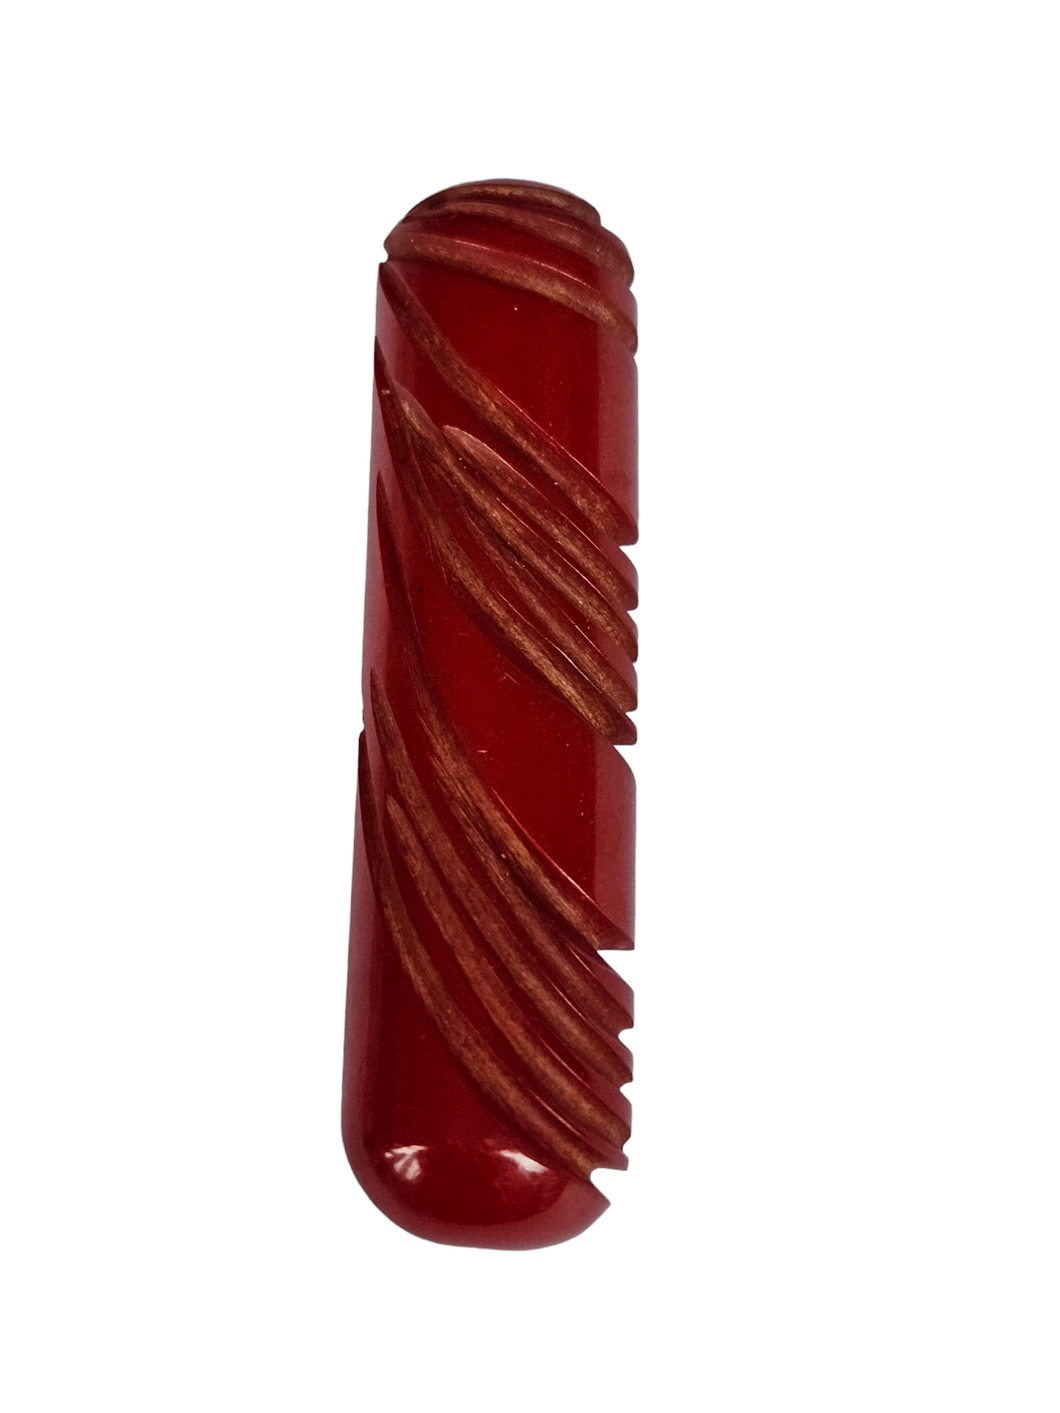 1940s Carved Red Bakelite Bar Brooch